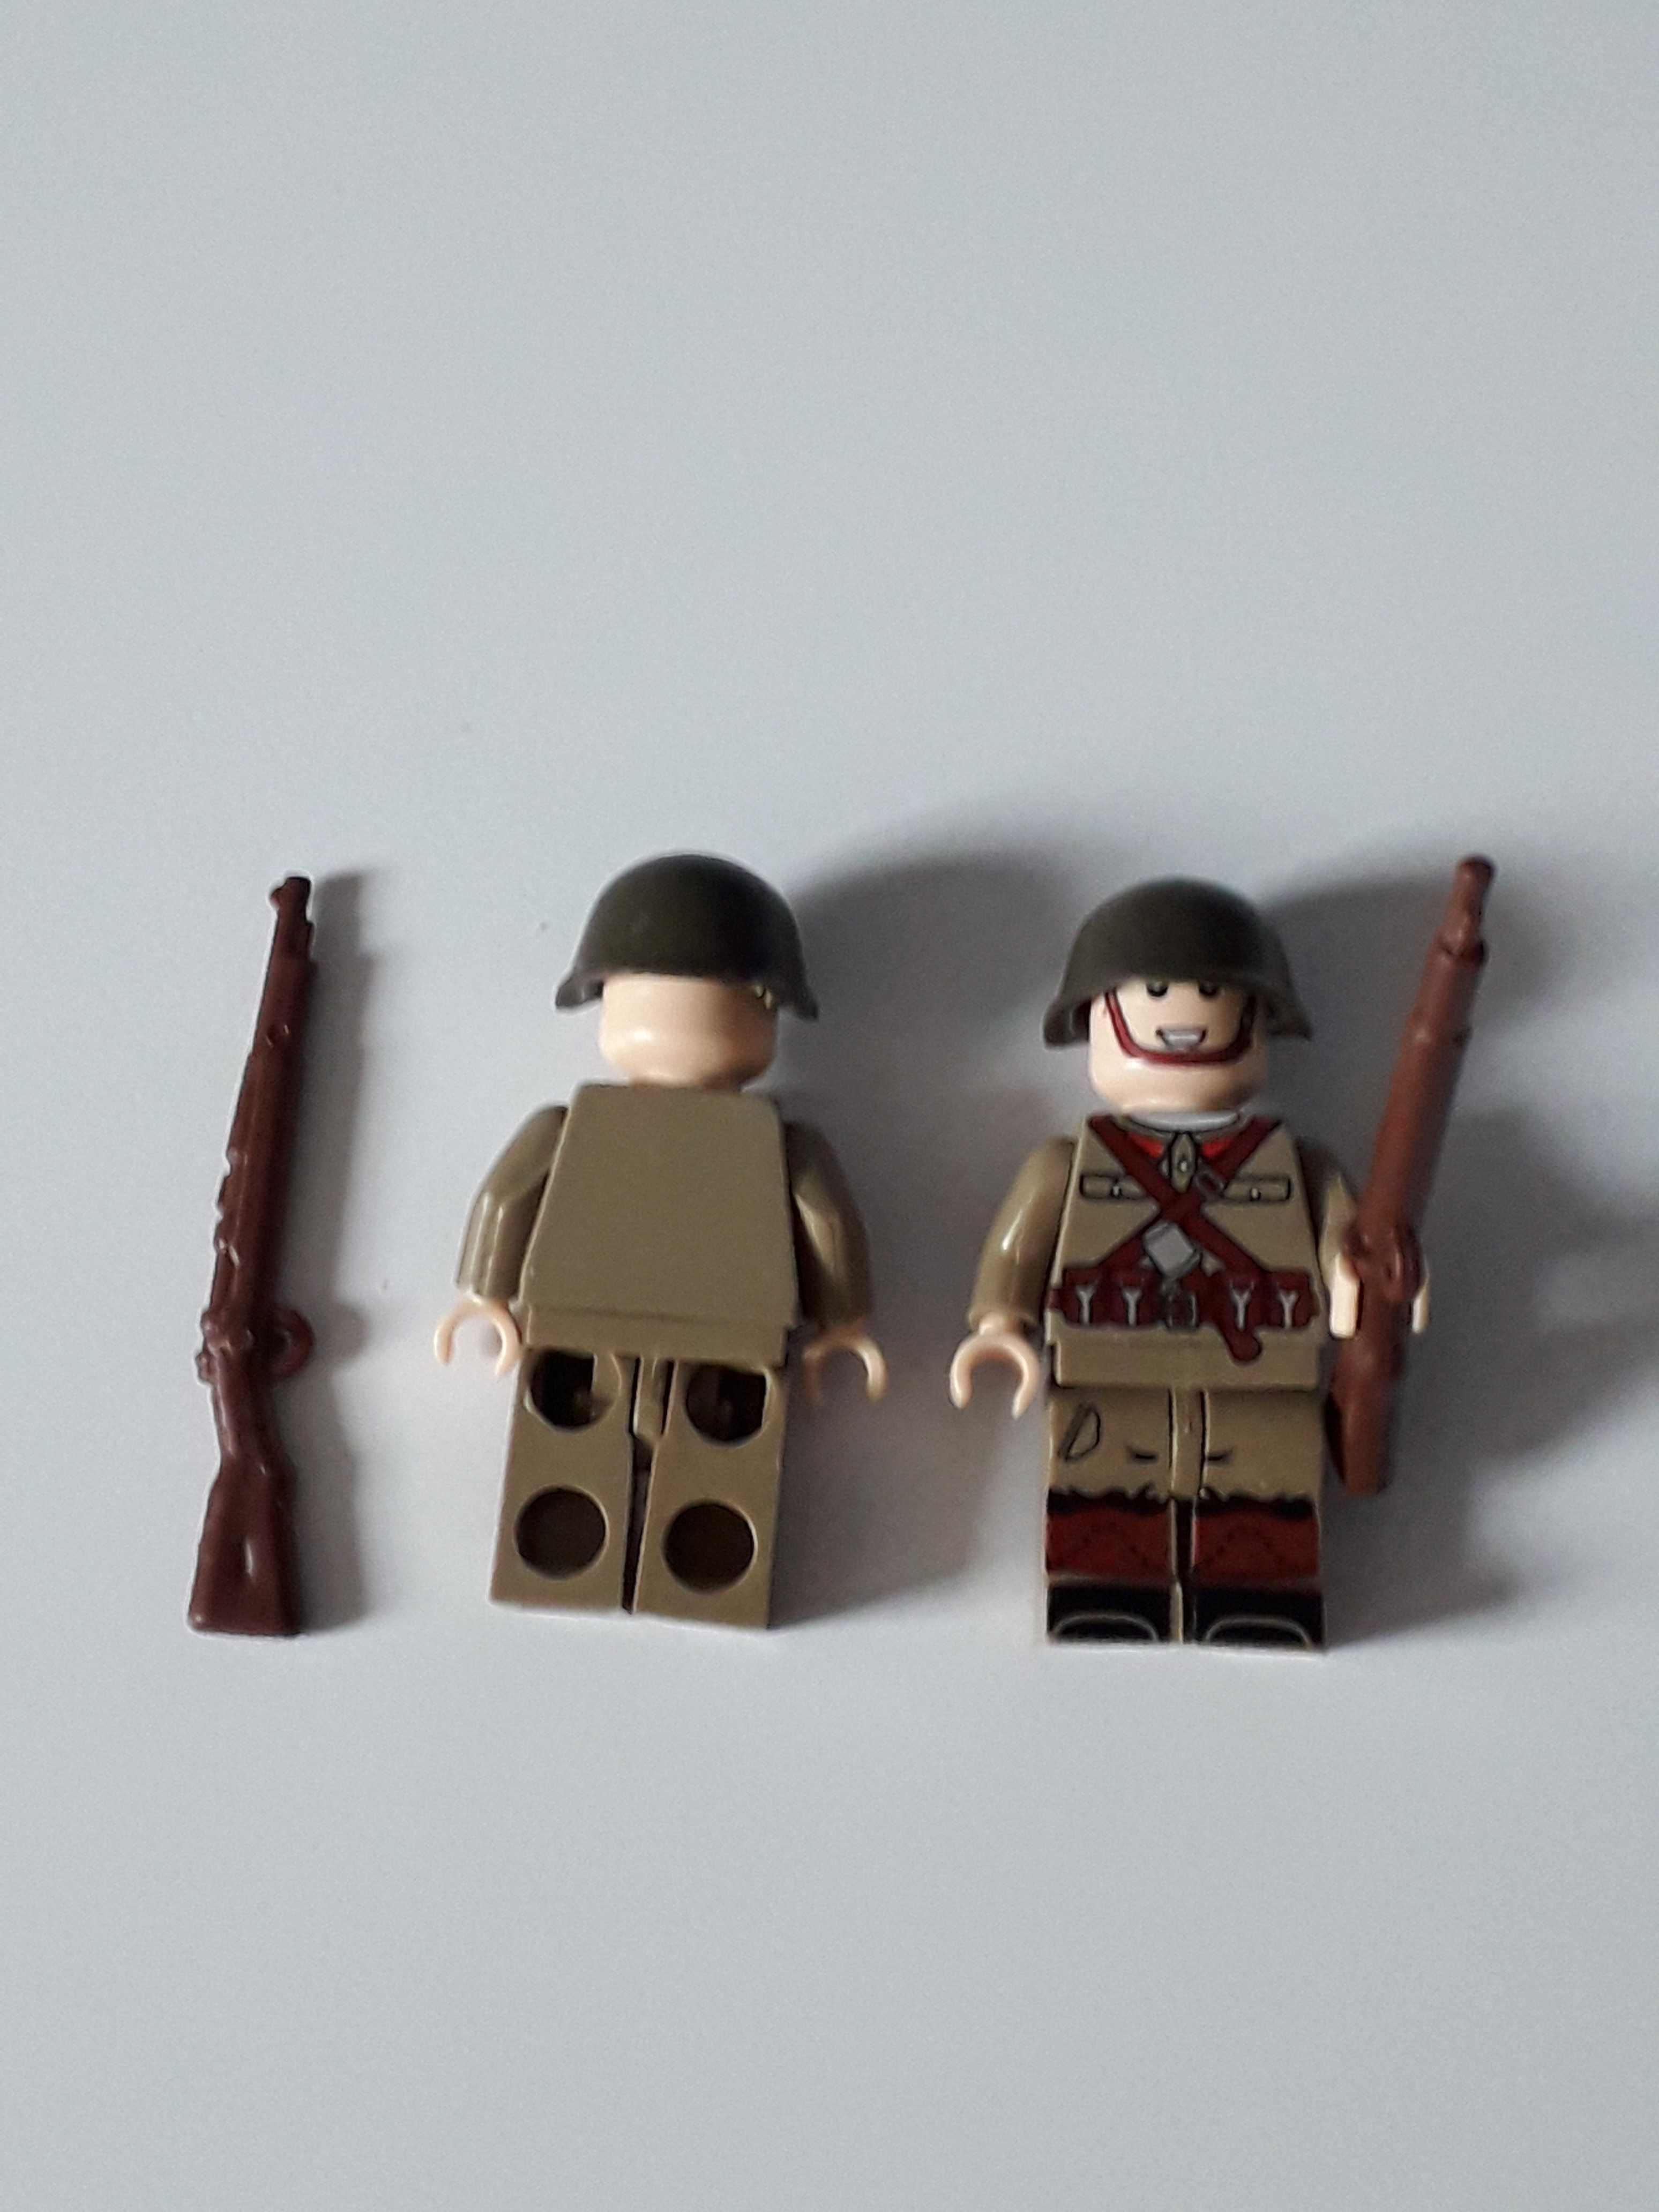 Figurka żołnierza rosyjskiego z bronią 2 ww. komp. Lego, Cobi